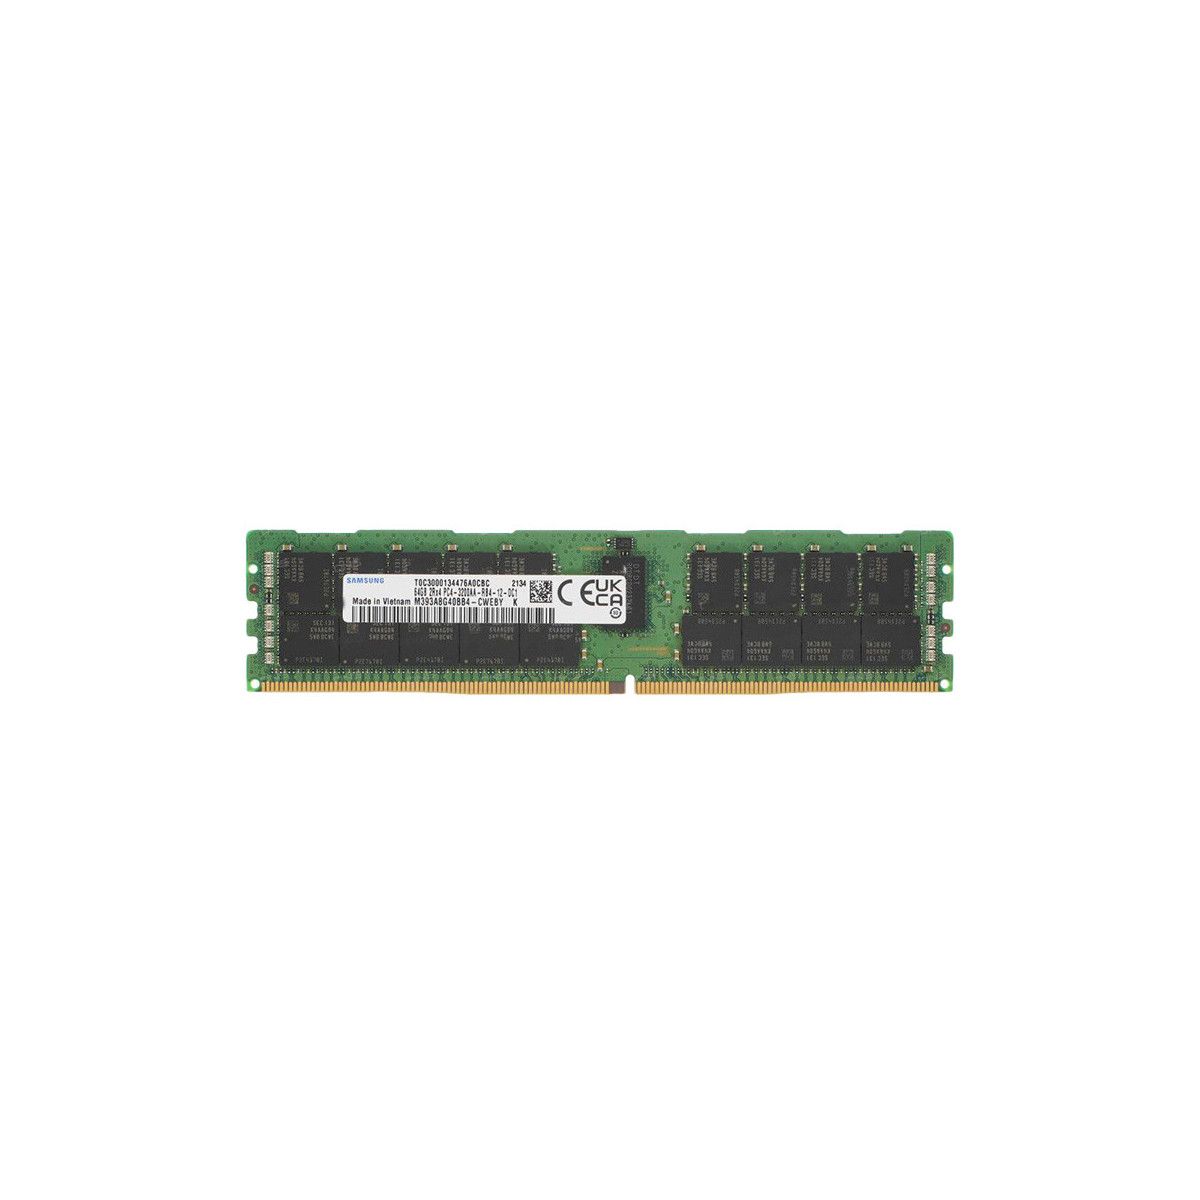 AB214253-MS - Memstar 1x 64GB DDR4-3200 RDIMM PC4-25600R - Mem-Star compatibel OEM geheugen 1 - Memstar 